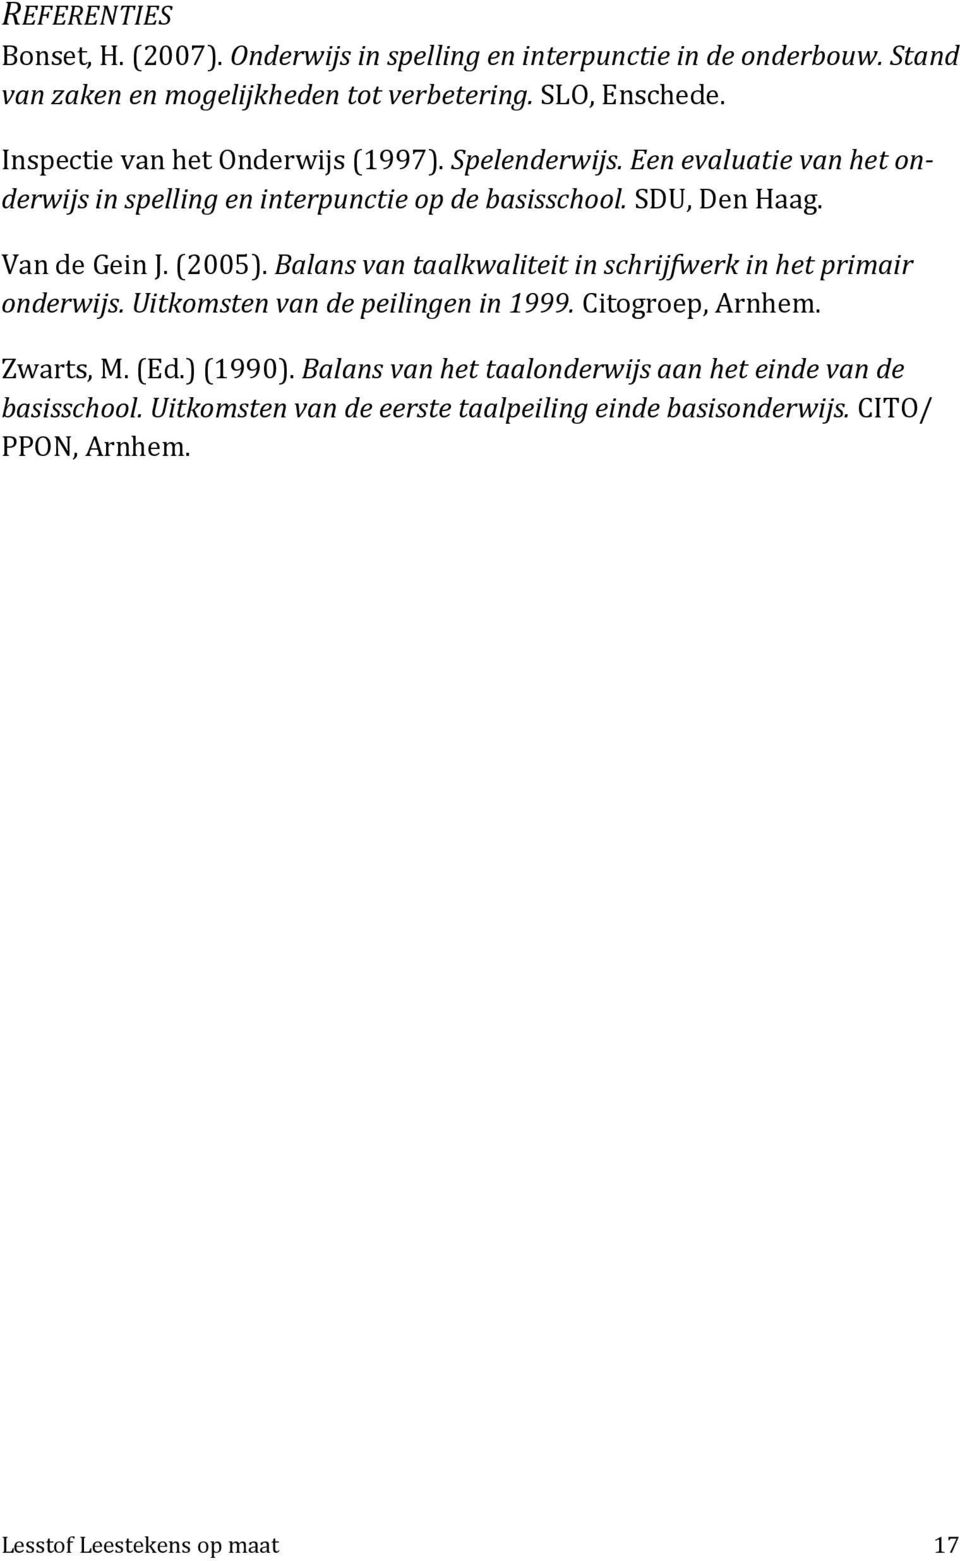 (2005). Balans van taalkwaliteit in schrijfwerk in het primair onderwijs. Uitkomsten van de peilingen in 1999. Citogroep, Arnhem. Zwarts, M. (Ed.) (1990).